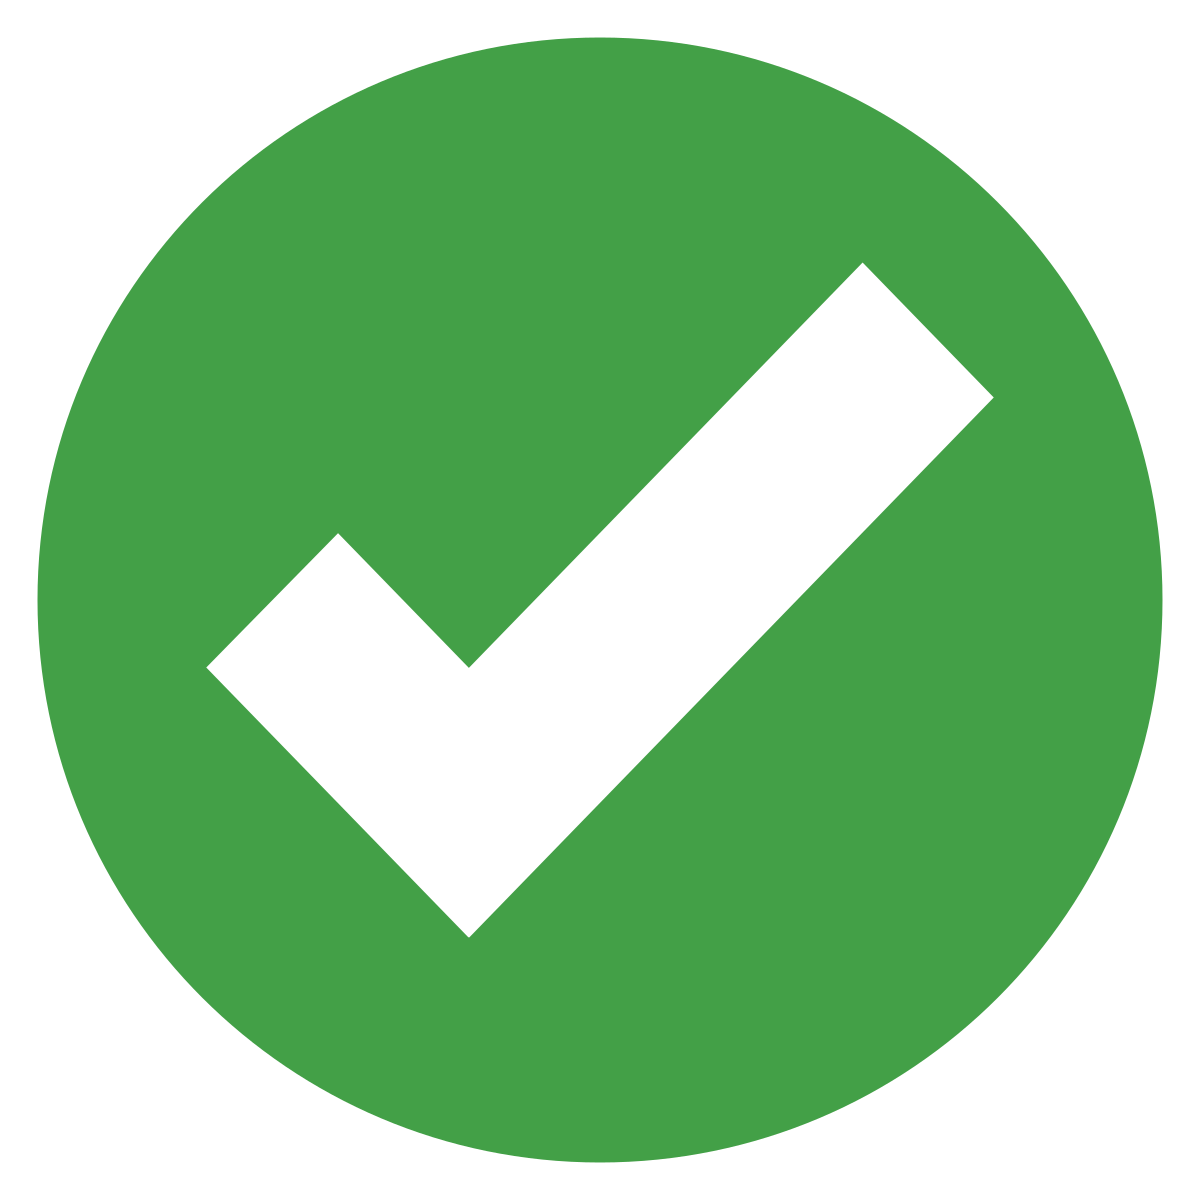 A green checkmark icon.